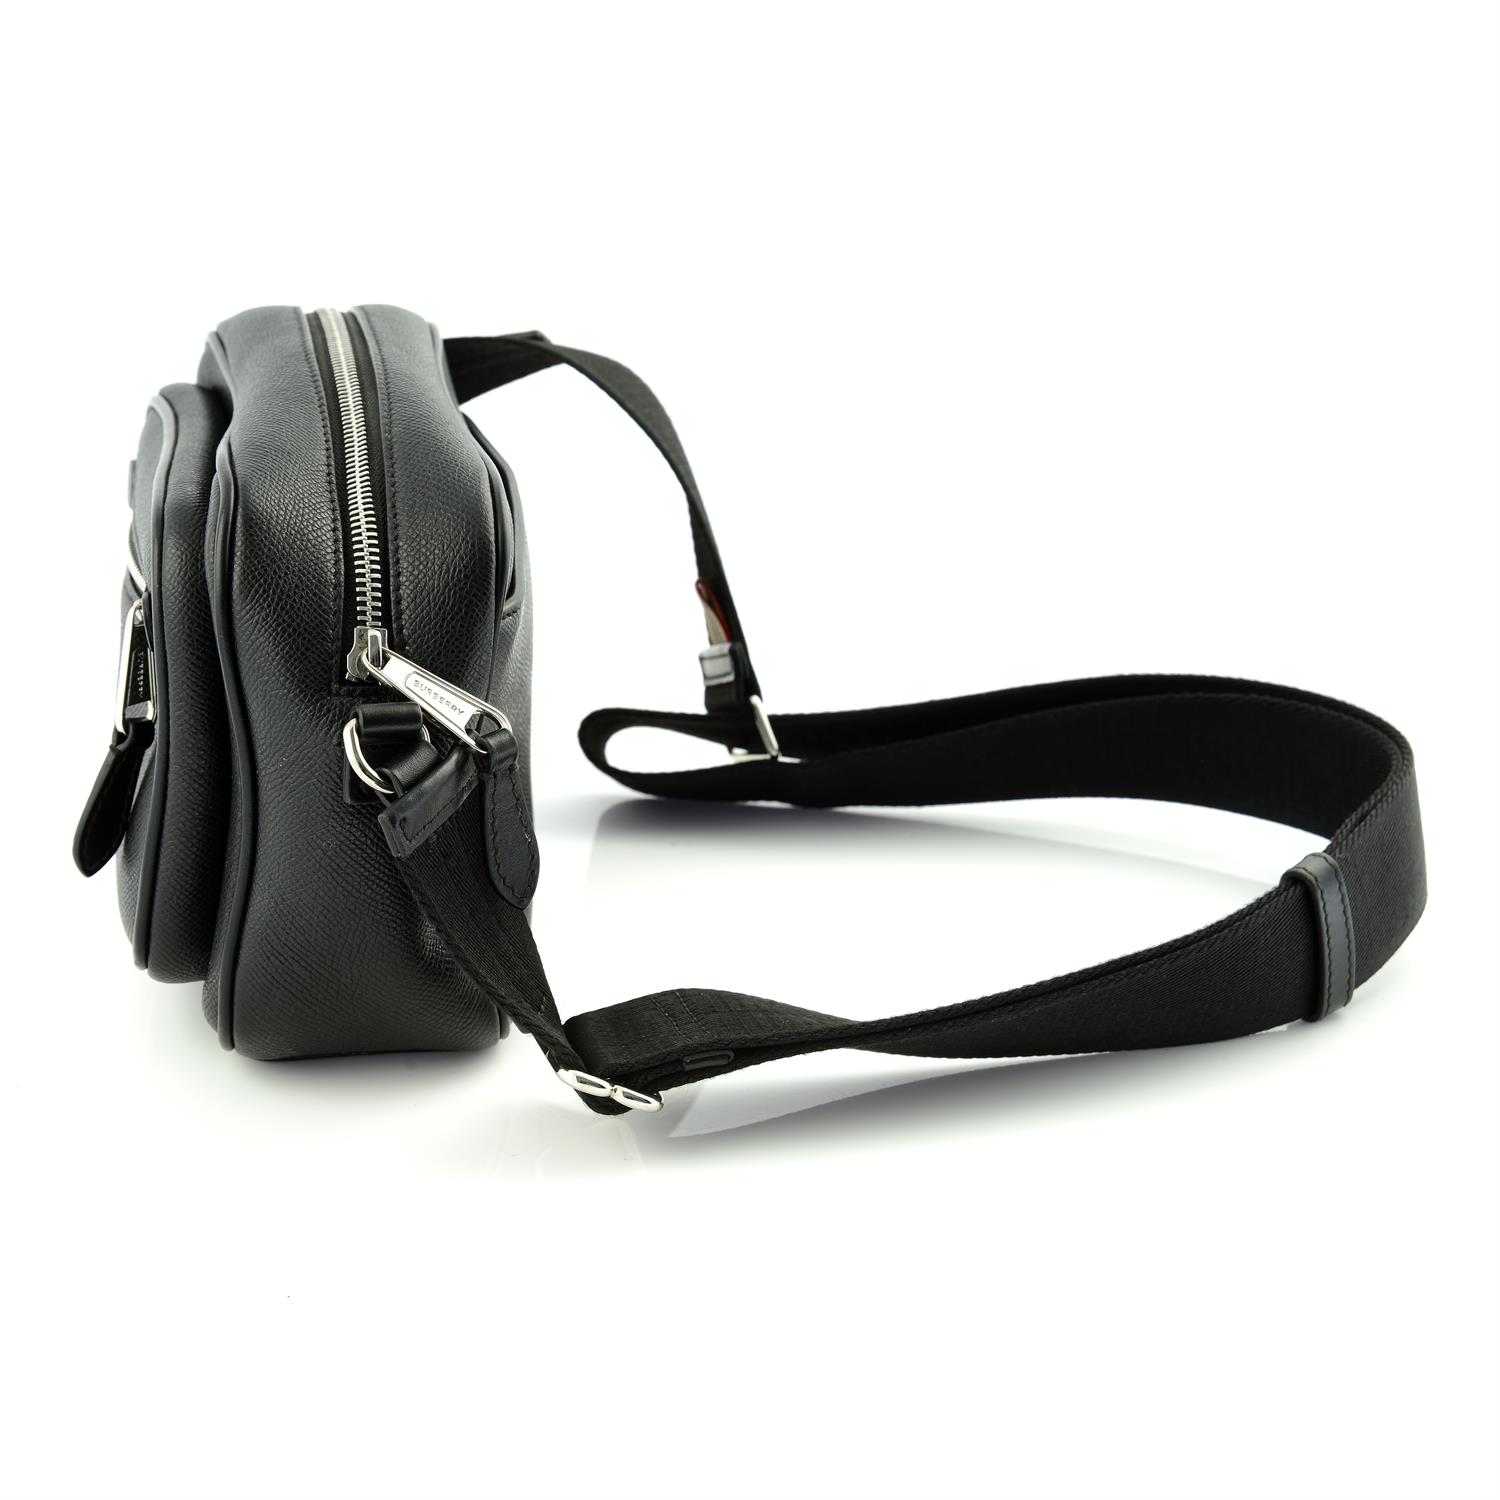 BURBERRY - a black leather camera handbag. - Image 3 of 6